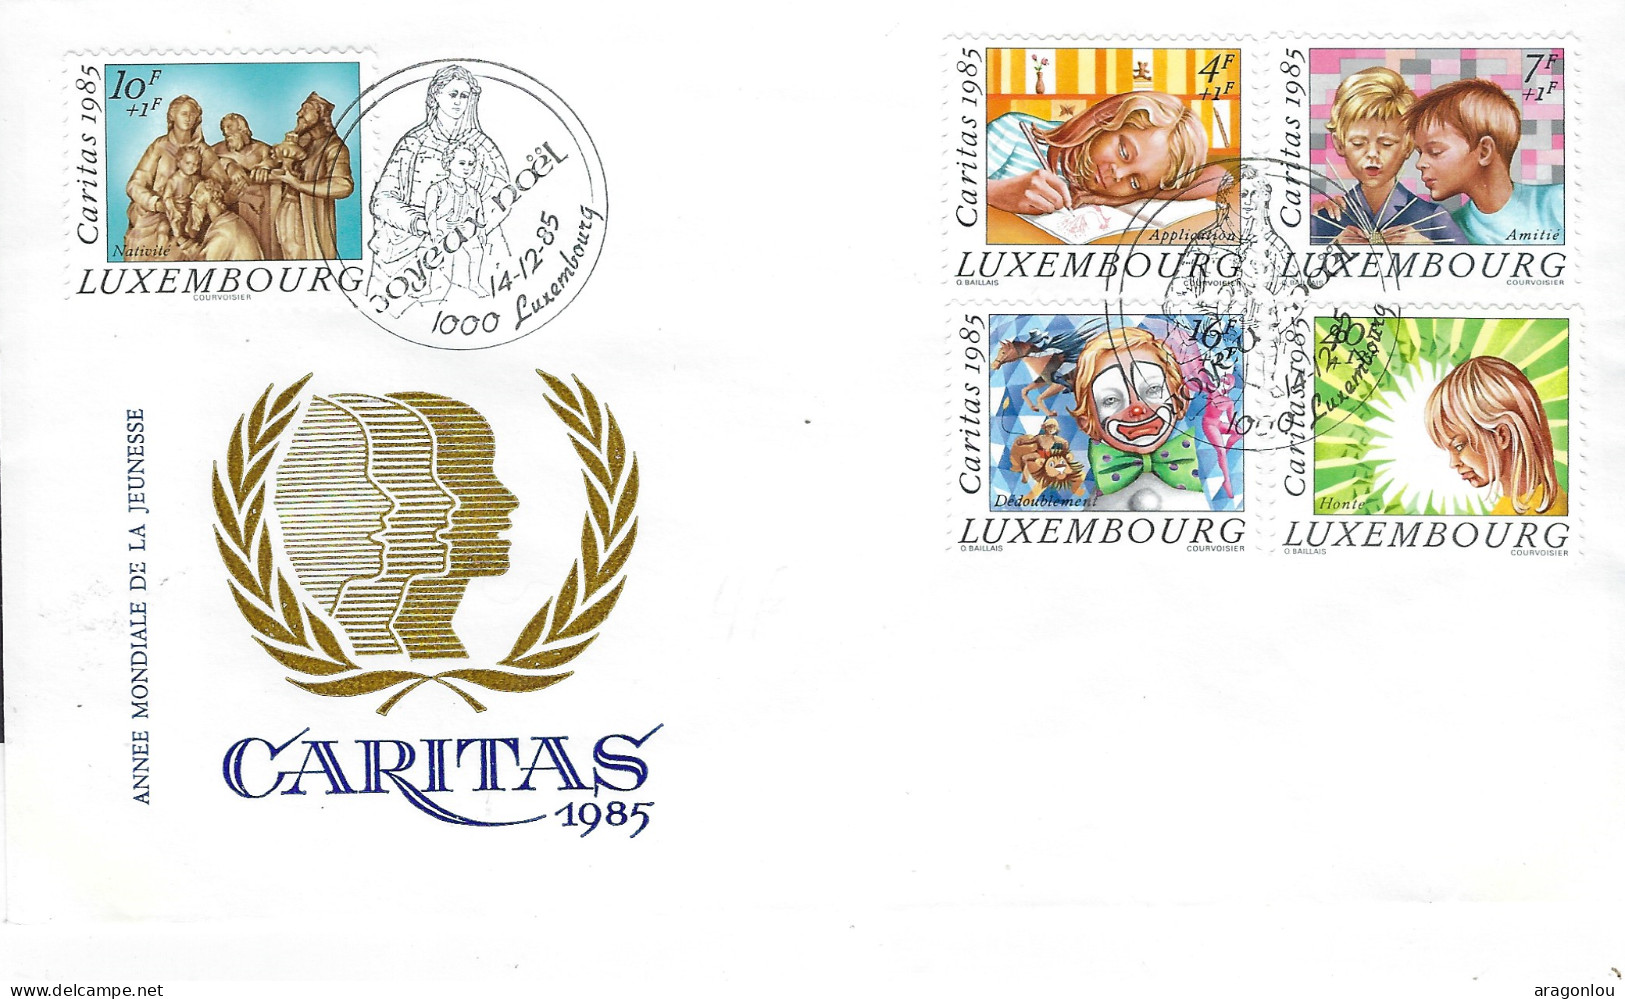 Luxembourg - Luxemburg - Lettre    1985  Caritas   Année Mondiale De La Jeunesse - Lettres & Documents